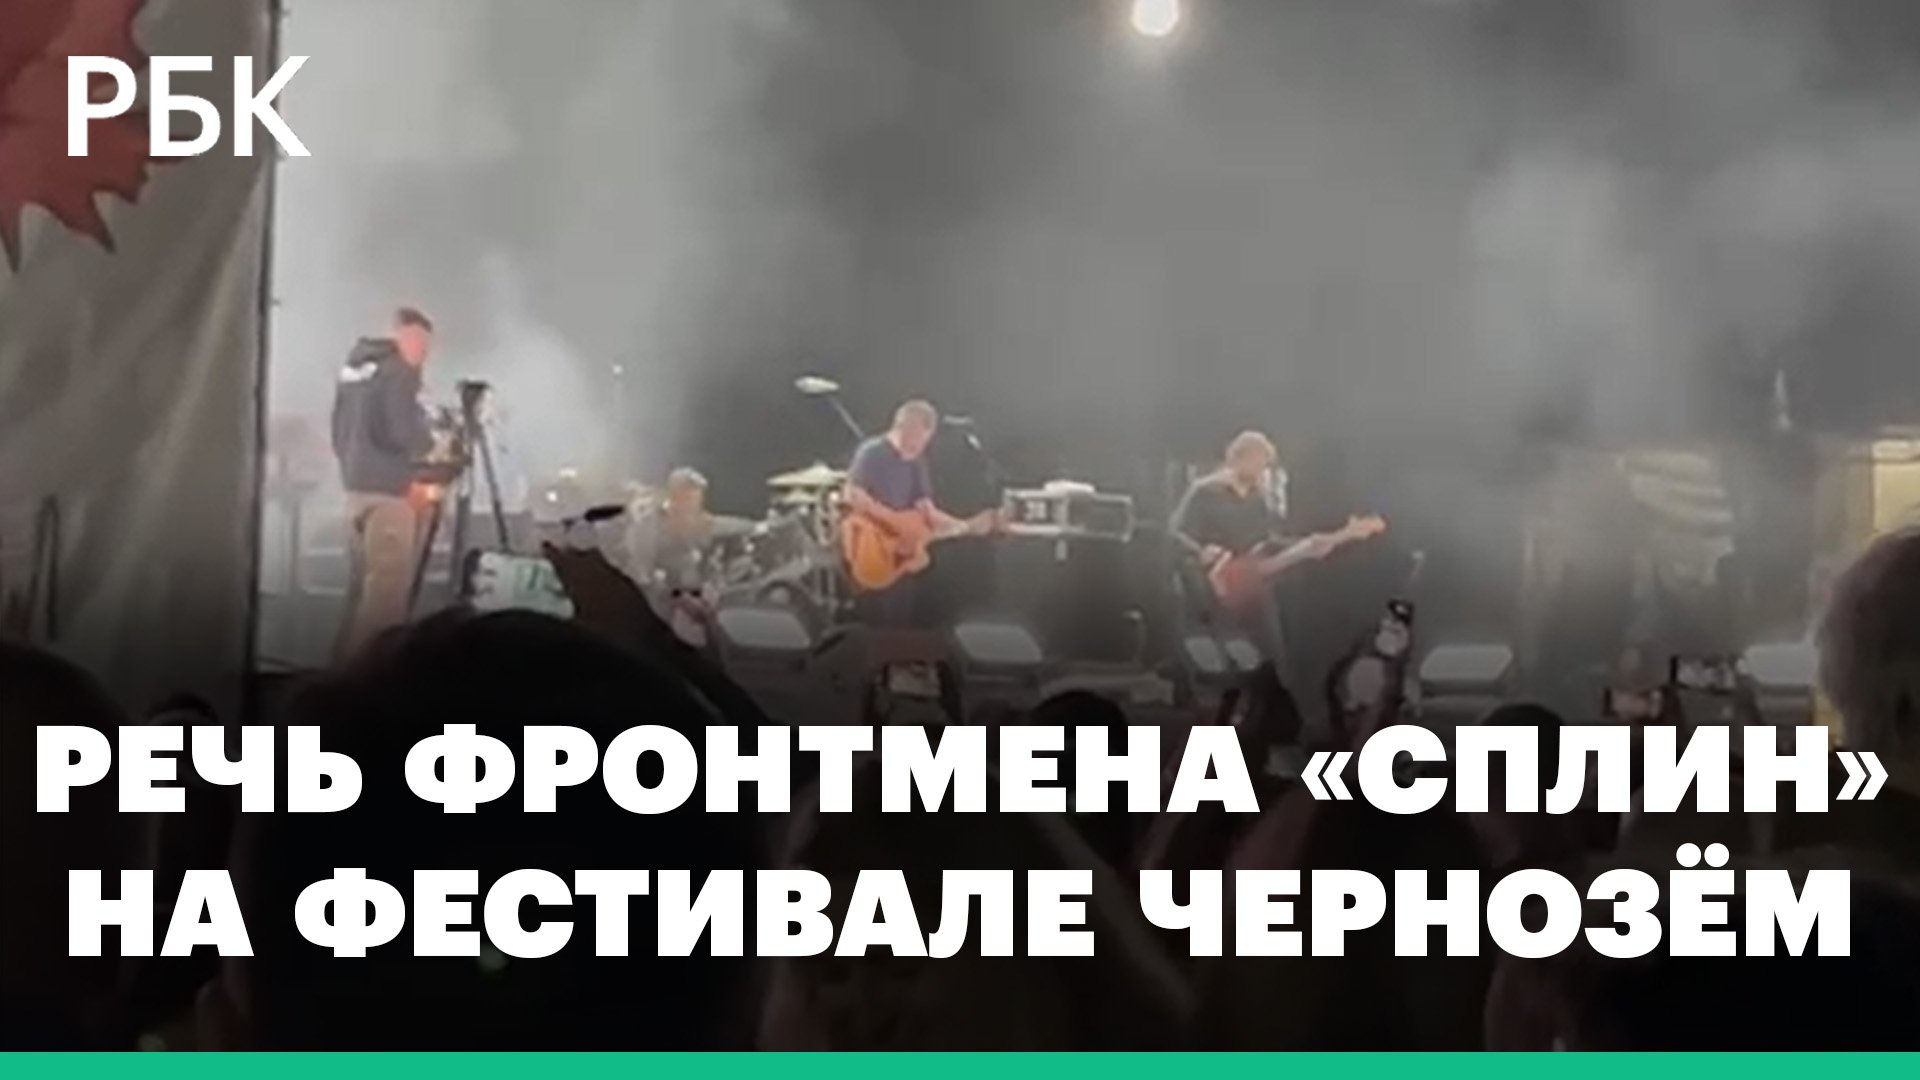 «Сплин» спел в поддержку музыкантов, которым пришлось уехать из России